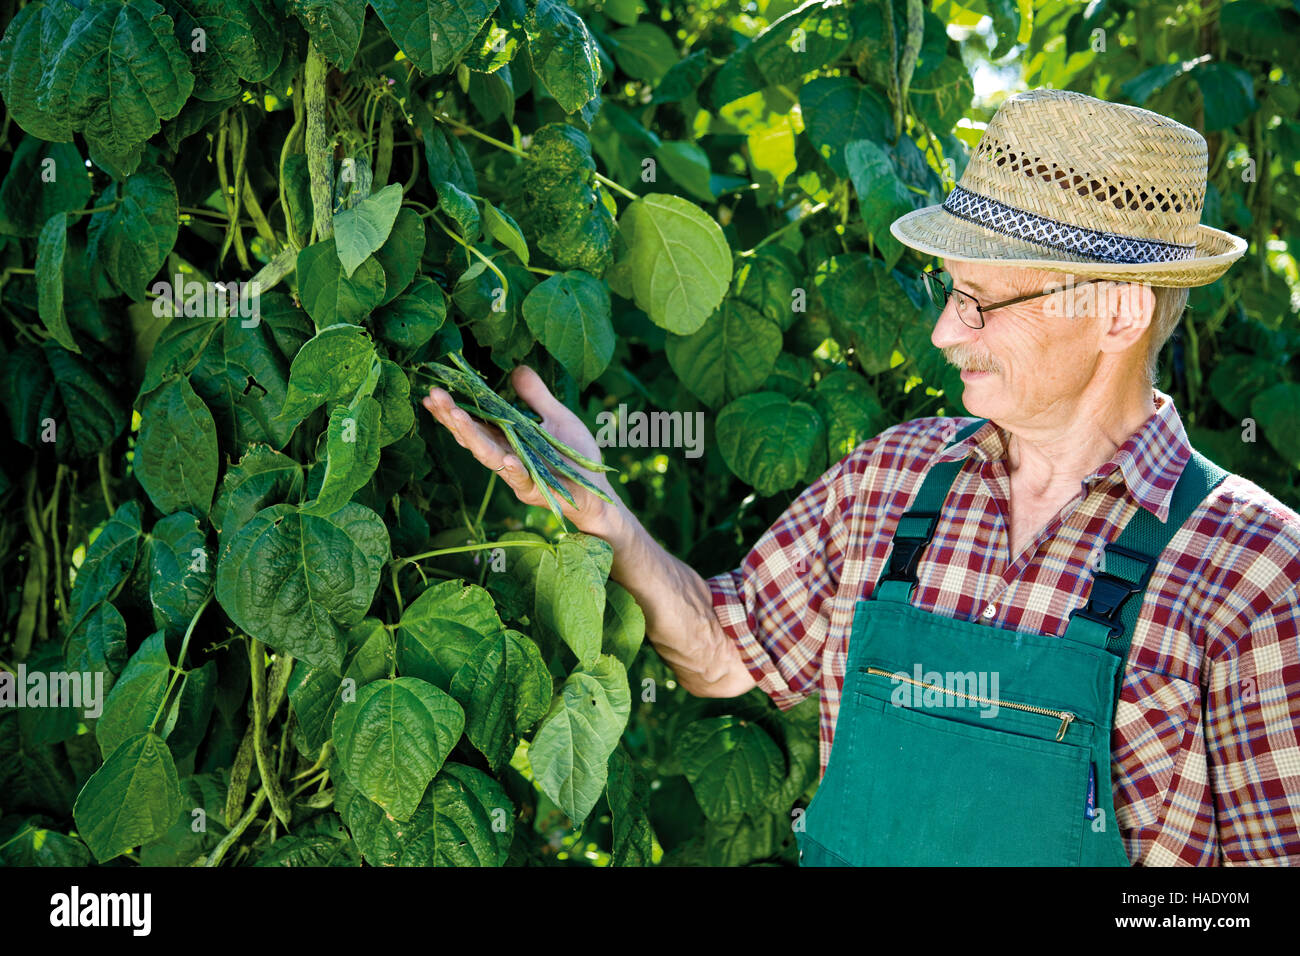 Orgulloso jardinero cosechando habichuelas Foto de stock